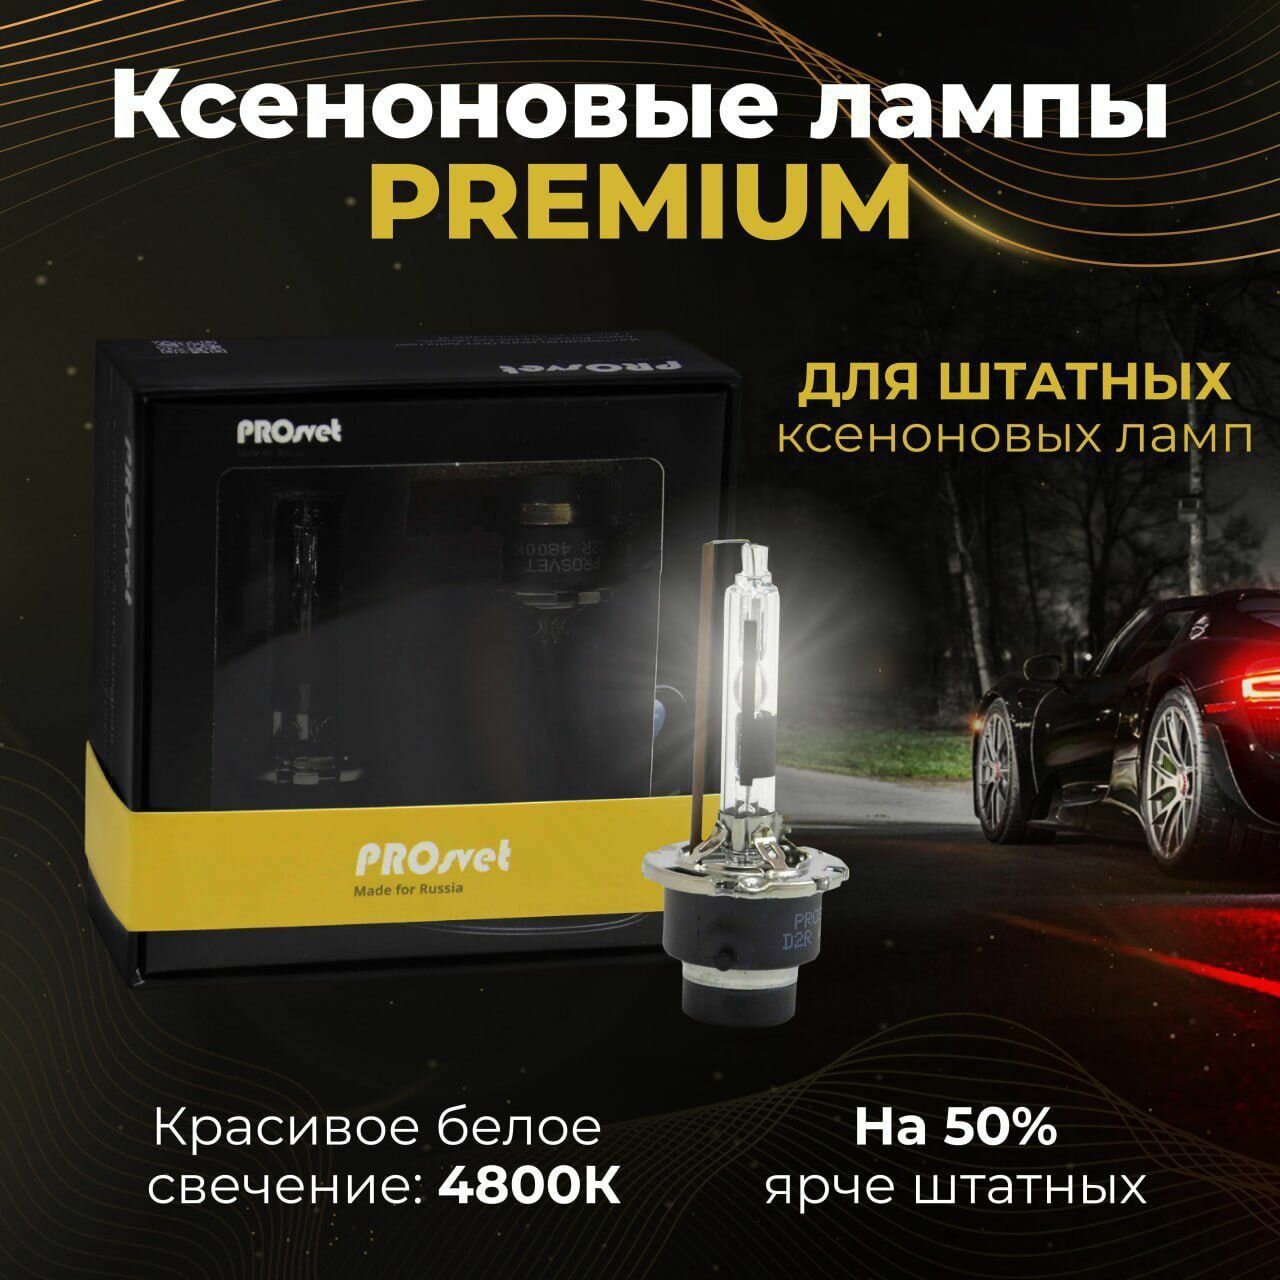 Лампа автомобильная ксеноновая PROsvet X-power 4800K PREMIUM цоколь D2R 35 Вт 2шт.